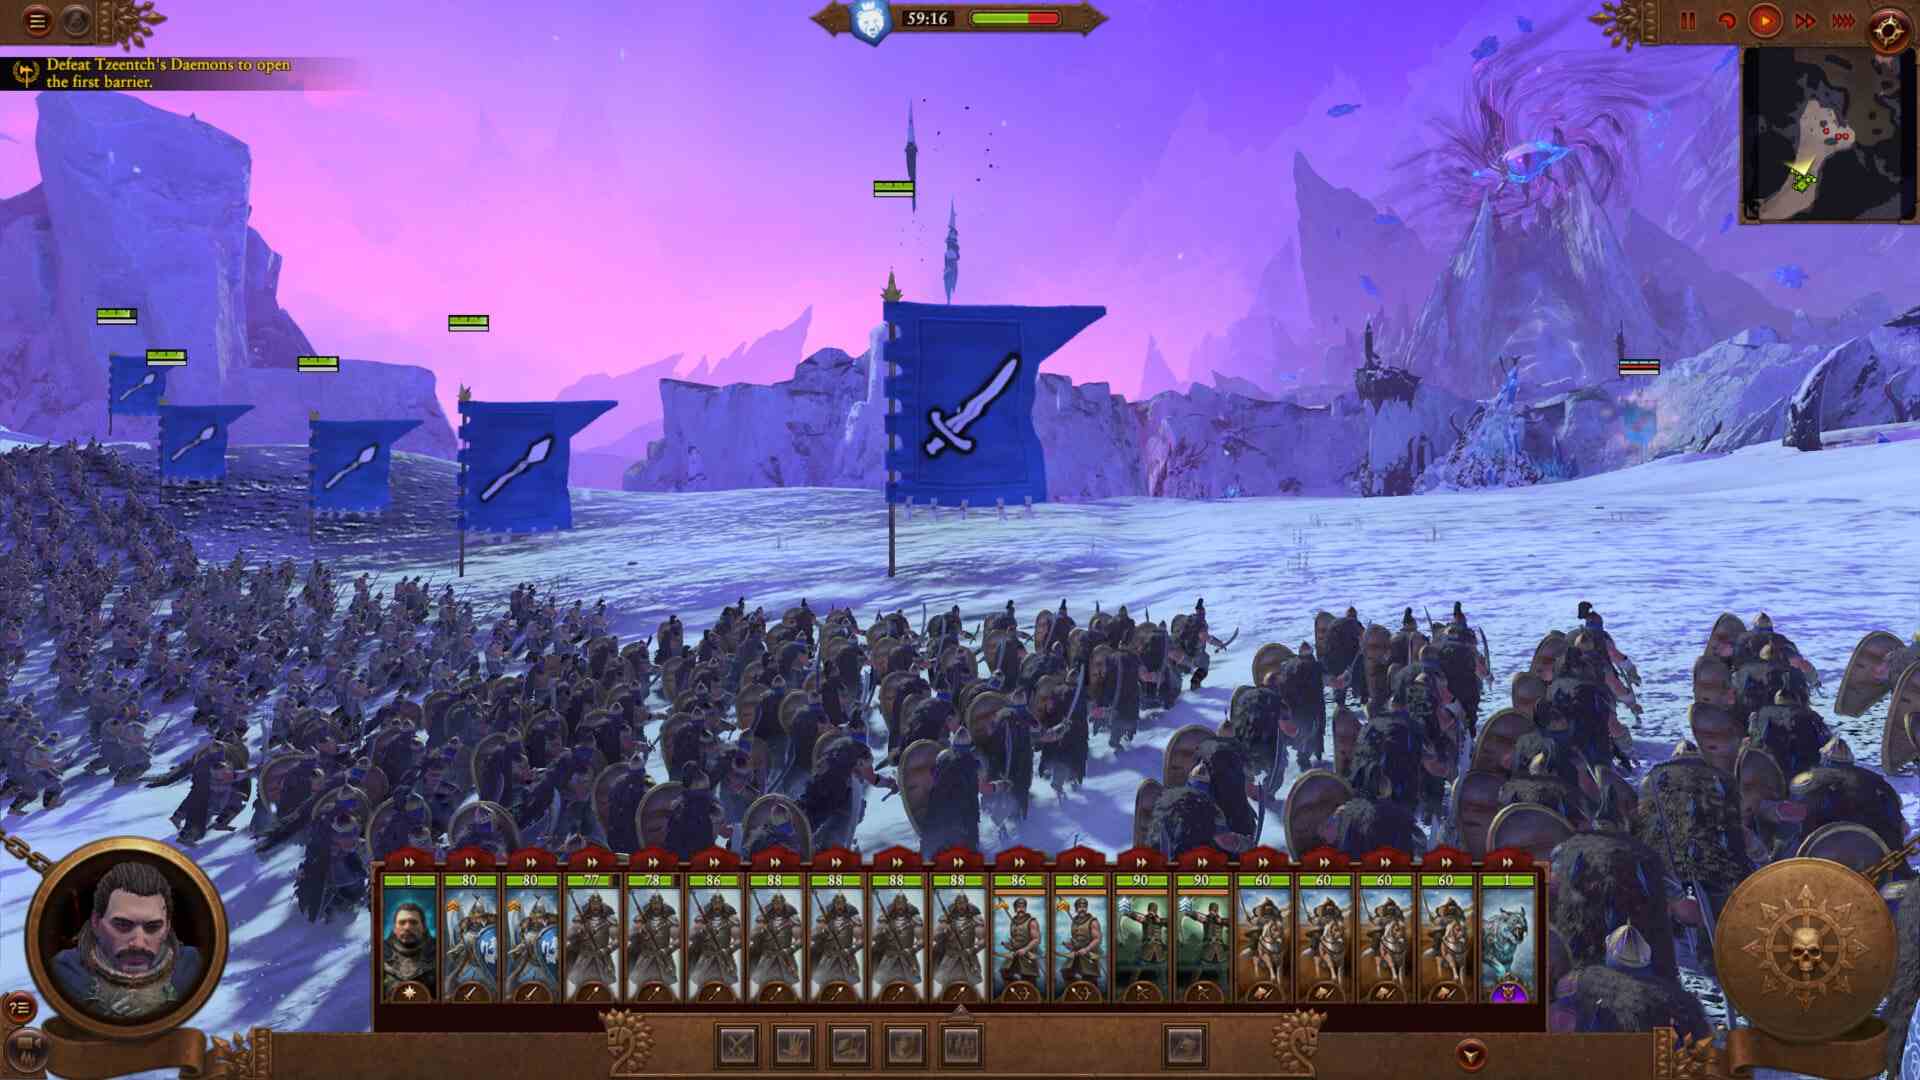 Die Prolog-Kampagne von Total War: Warhammer III 3 ist die beste Einführung und das beste Tutorial für die Serie von Creative Assembly und Sega Yuri Barkov